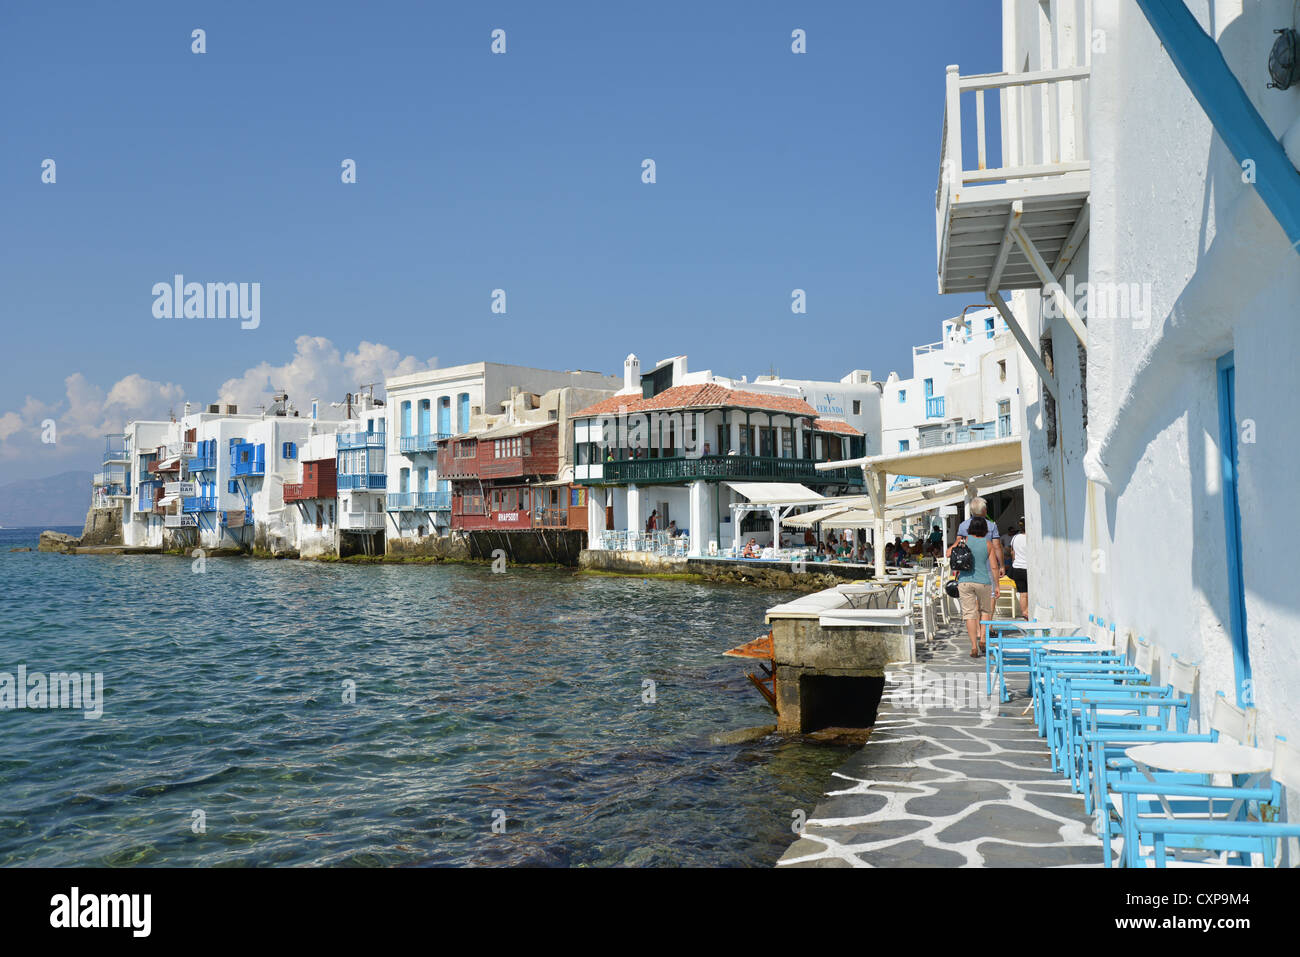 Vue sur le port avec ses tavernes au bord de l'eau, Chora, Mykonos, Cyclades, Mer Égée, Grèce Région Sud Banque D'Images